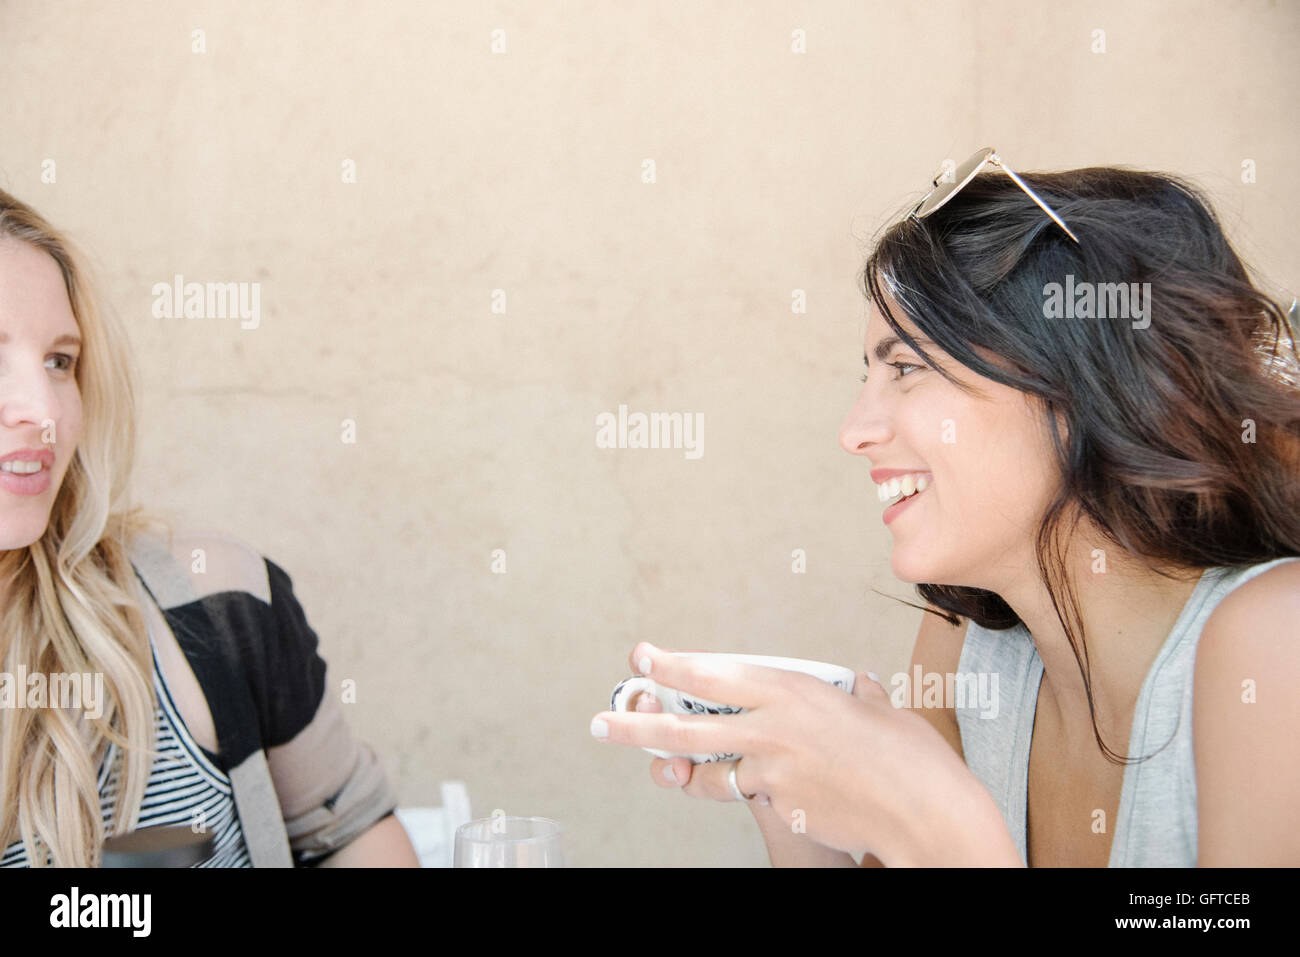 Retrato de una mujer joven con largo pelo castaño sosteniendo una taza charlando con un amigo Foto de stock